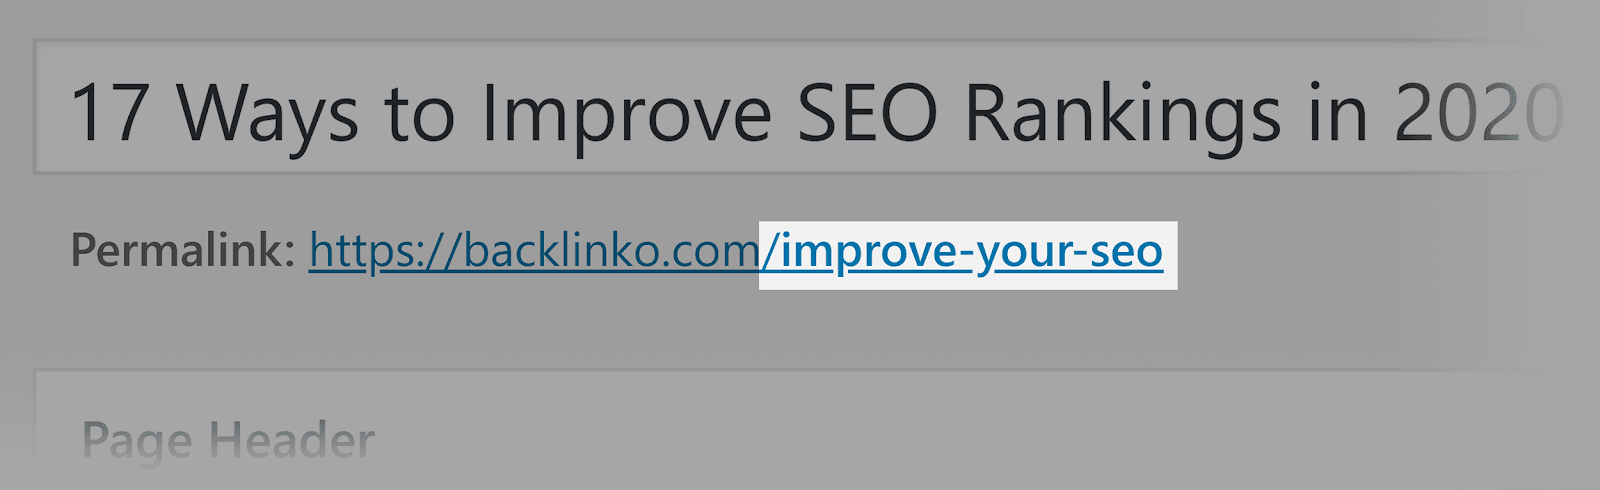 Cải thiện SEO của bạn - Từ khóa trong URL - Mẹo tiếp thị nội dung  